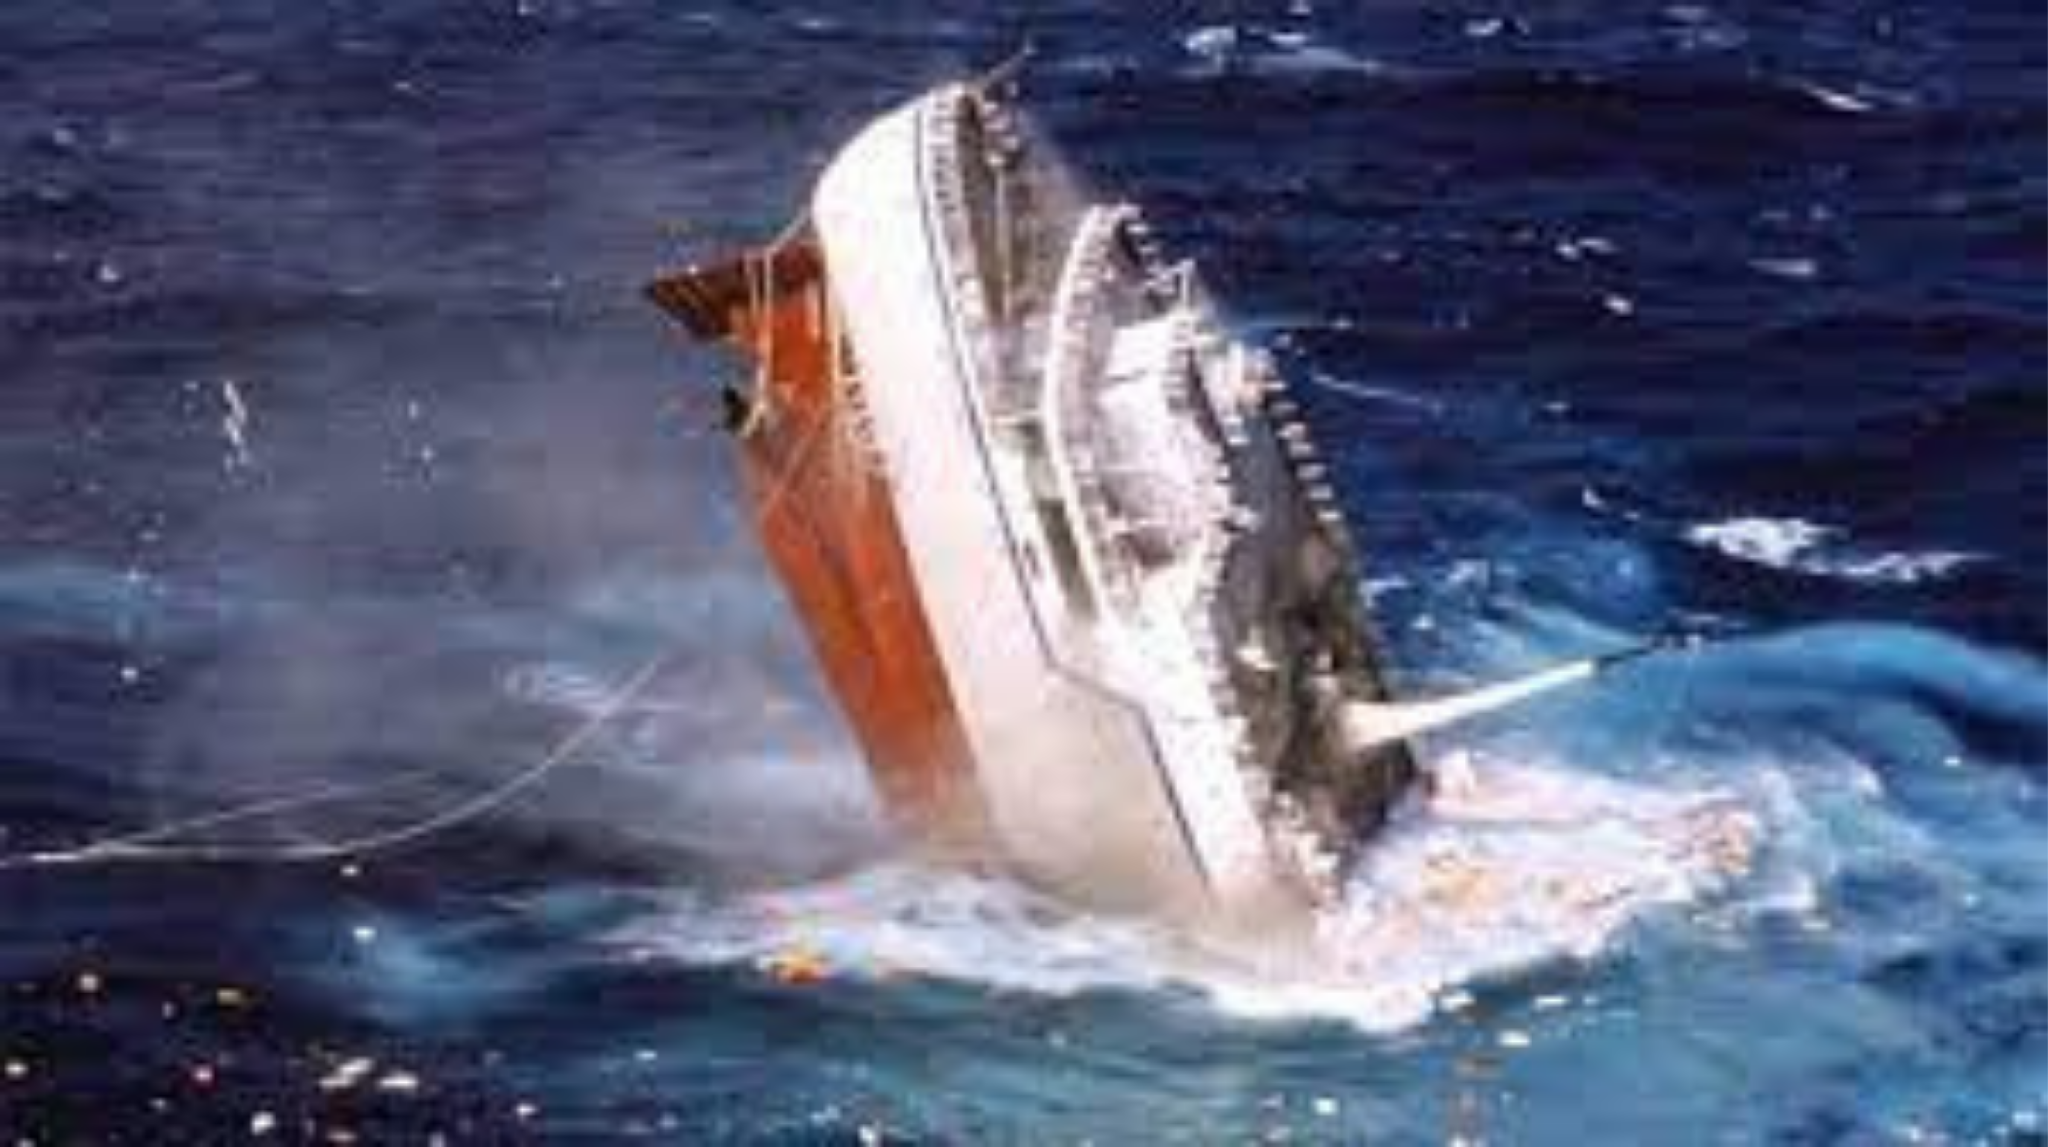 10 of the World’s Deadliest Shipwrecks